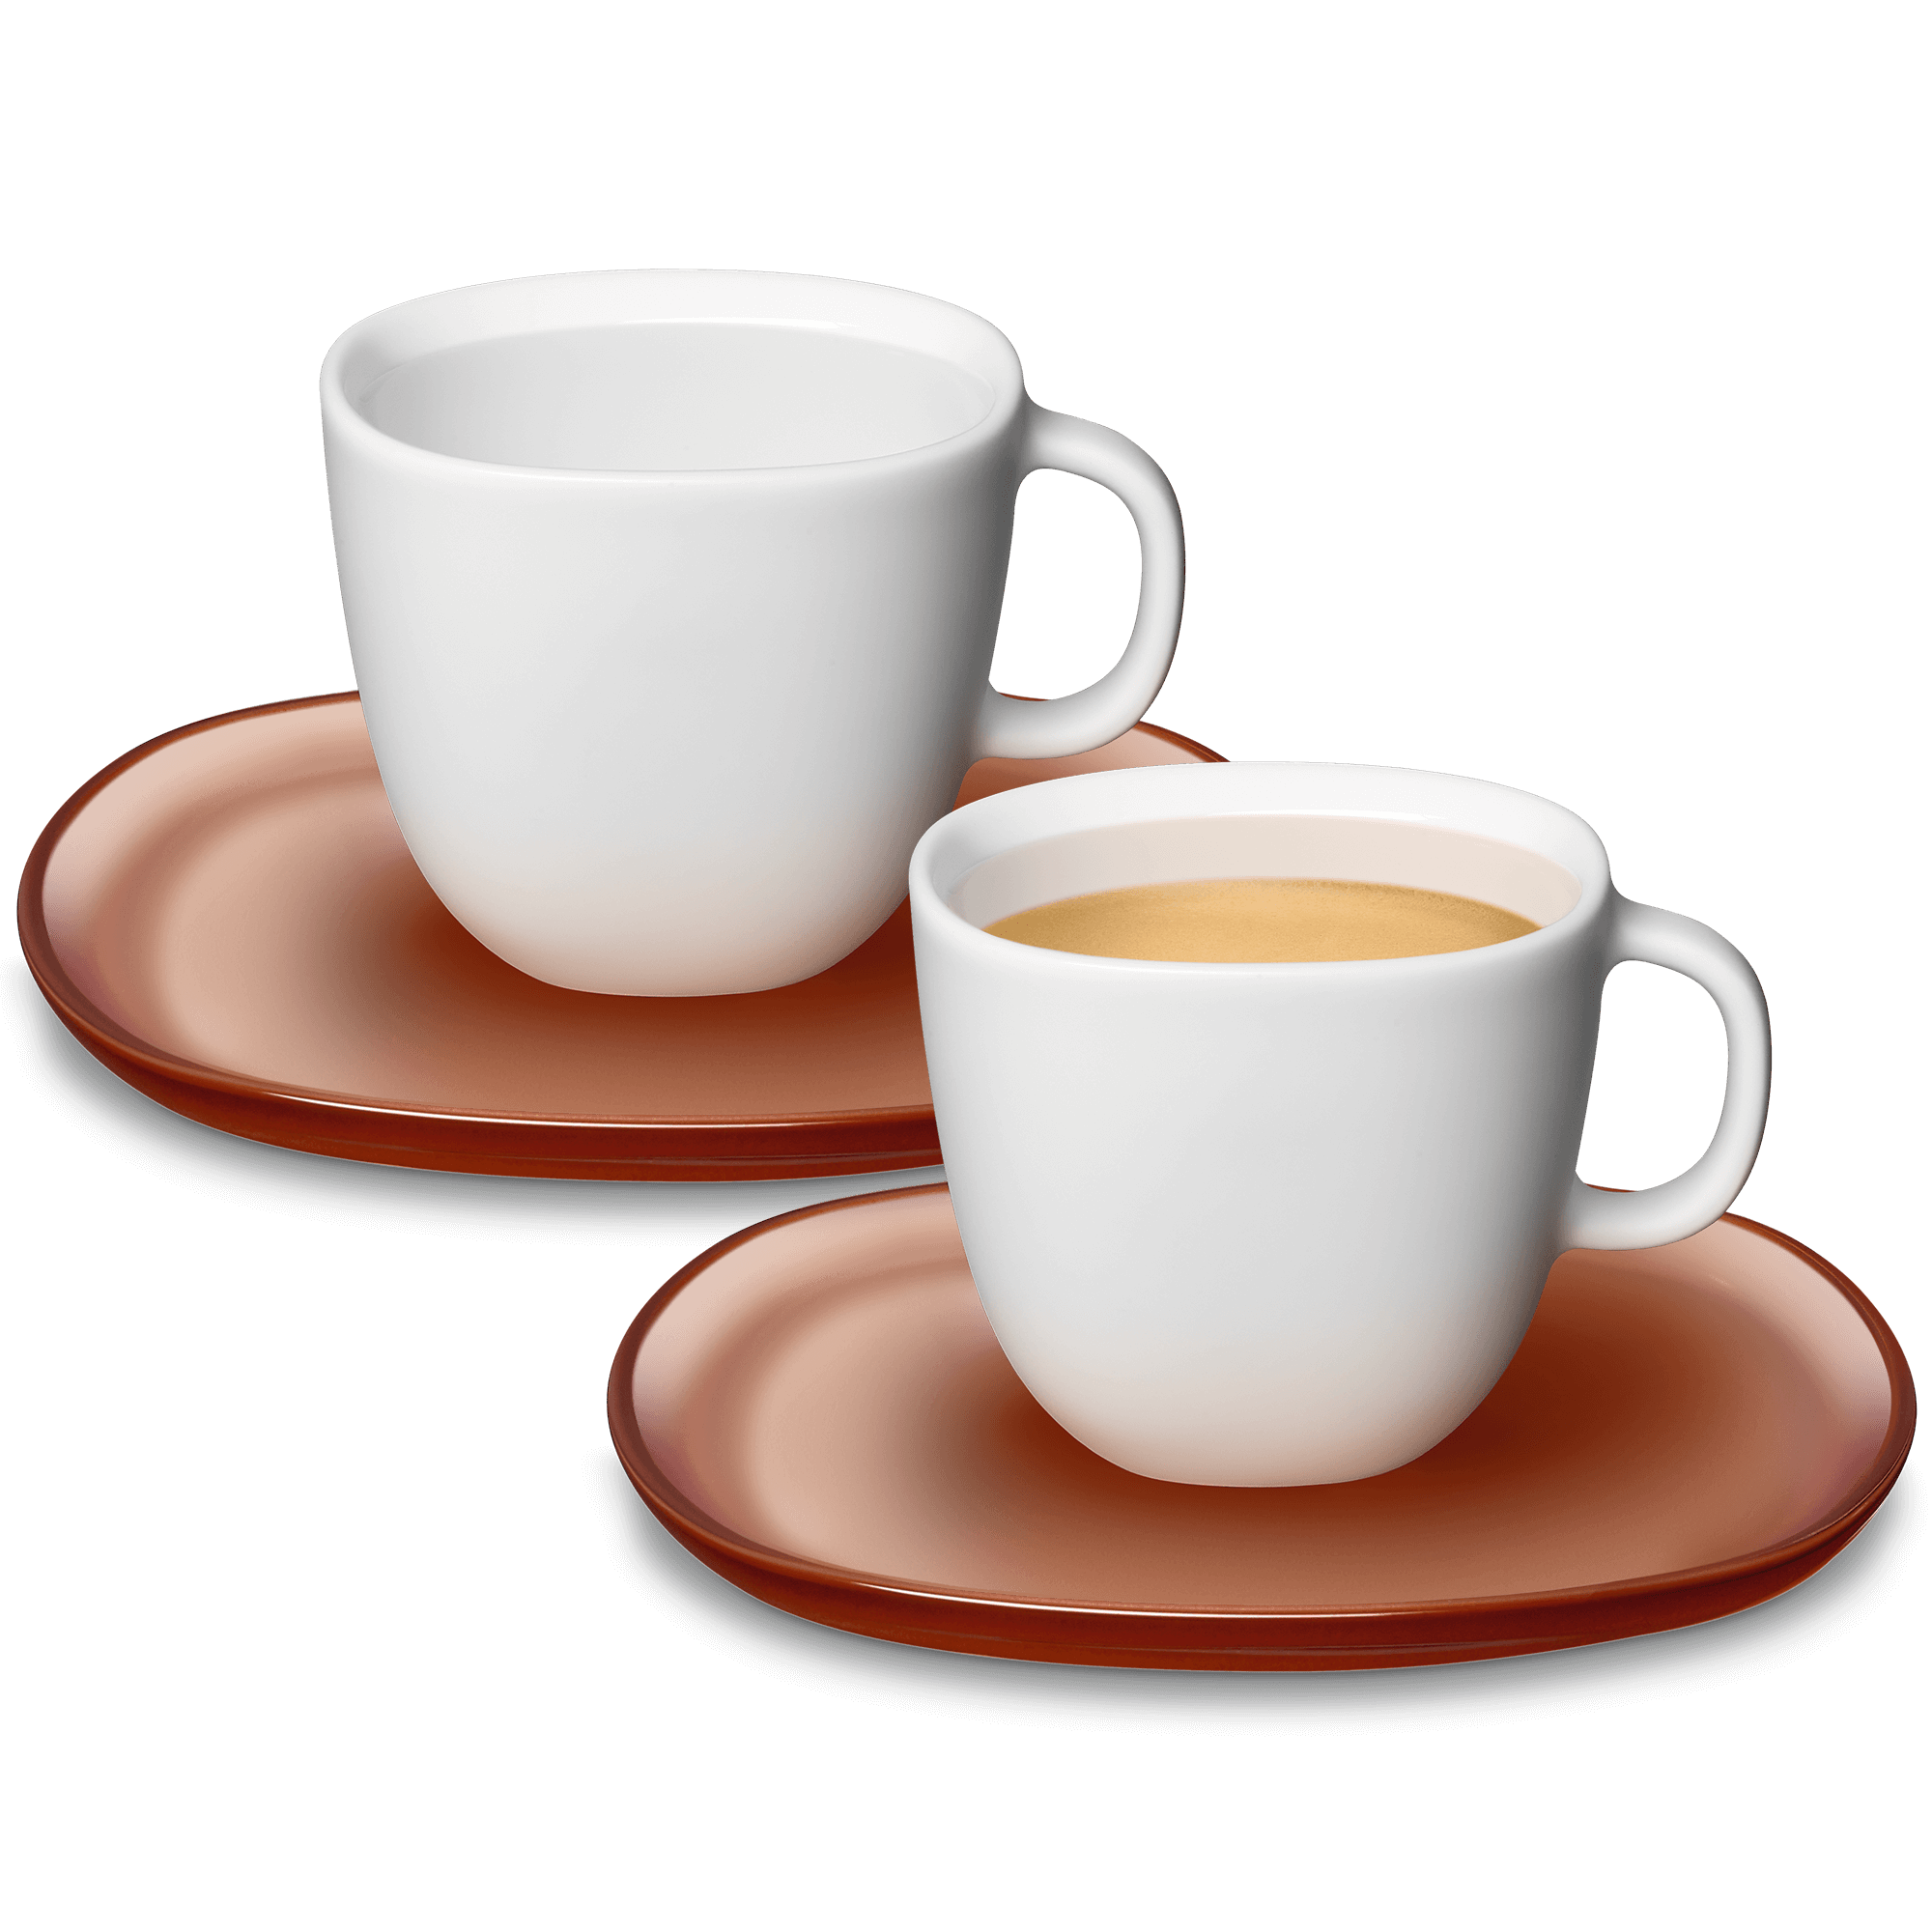 LUME Espresso Tassen (2 x 80 ml) Die Lume Kollektion ist ein zeitgenössischer Klassiker und verleiht der italienischen Eleganz einen modernen Glanz. Set mit 2 Espressotassen (je ca. 80 ml) aus weißem, mattem Porzellan und zwei Untertassen in transluzentem Ockerrot. für 23 EUR